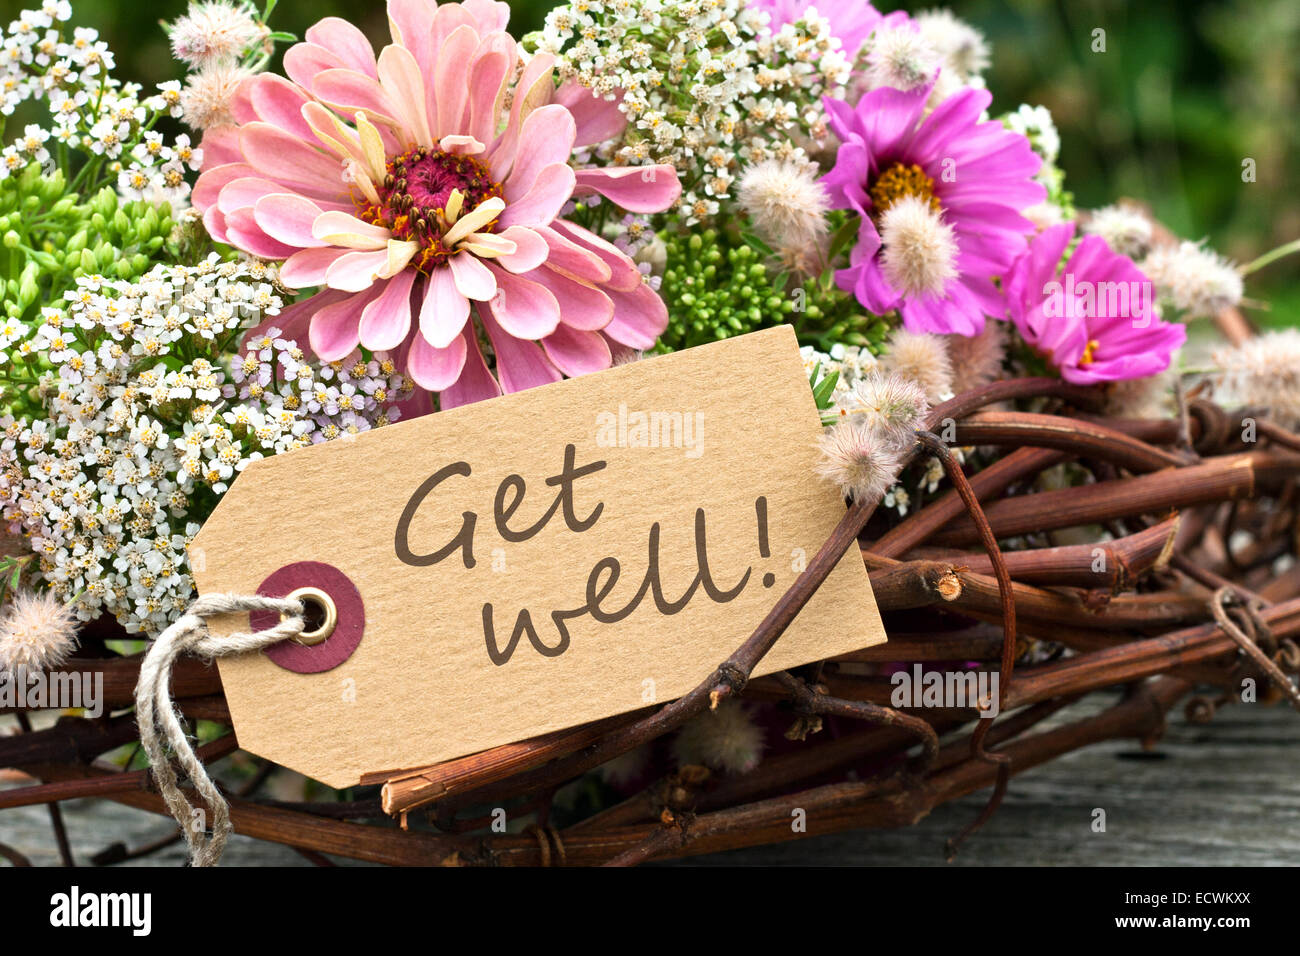 Carte anglaise avec des fleurs roses et Get Well Soon text Banque D'Images